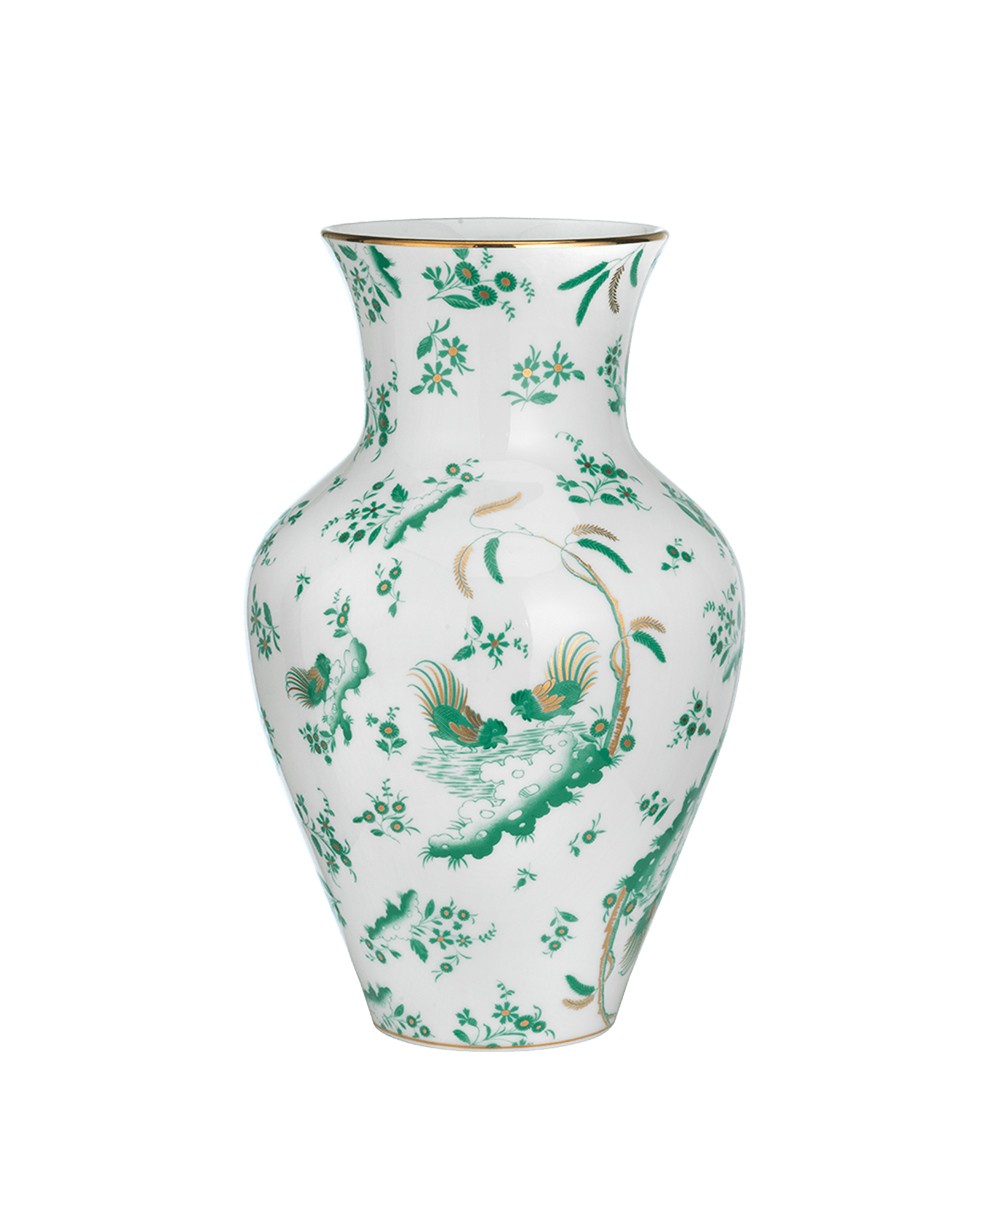 Produktbild "Oro Di Doccia Vase L" von Ginori 1735 im RAUM Concept store